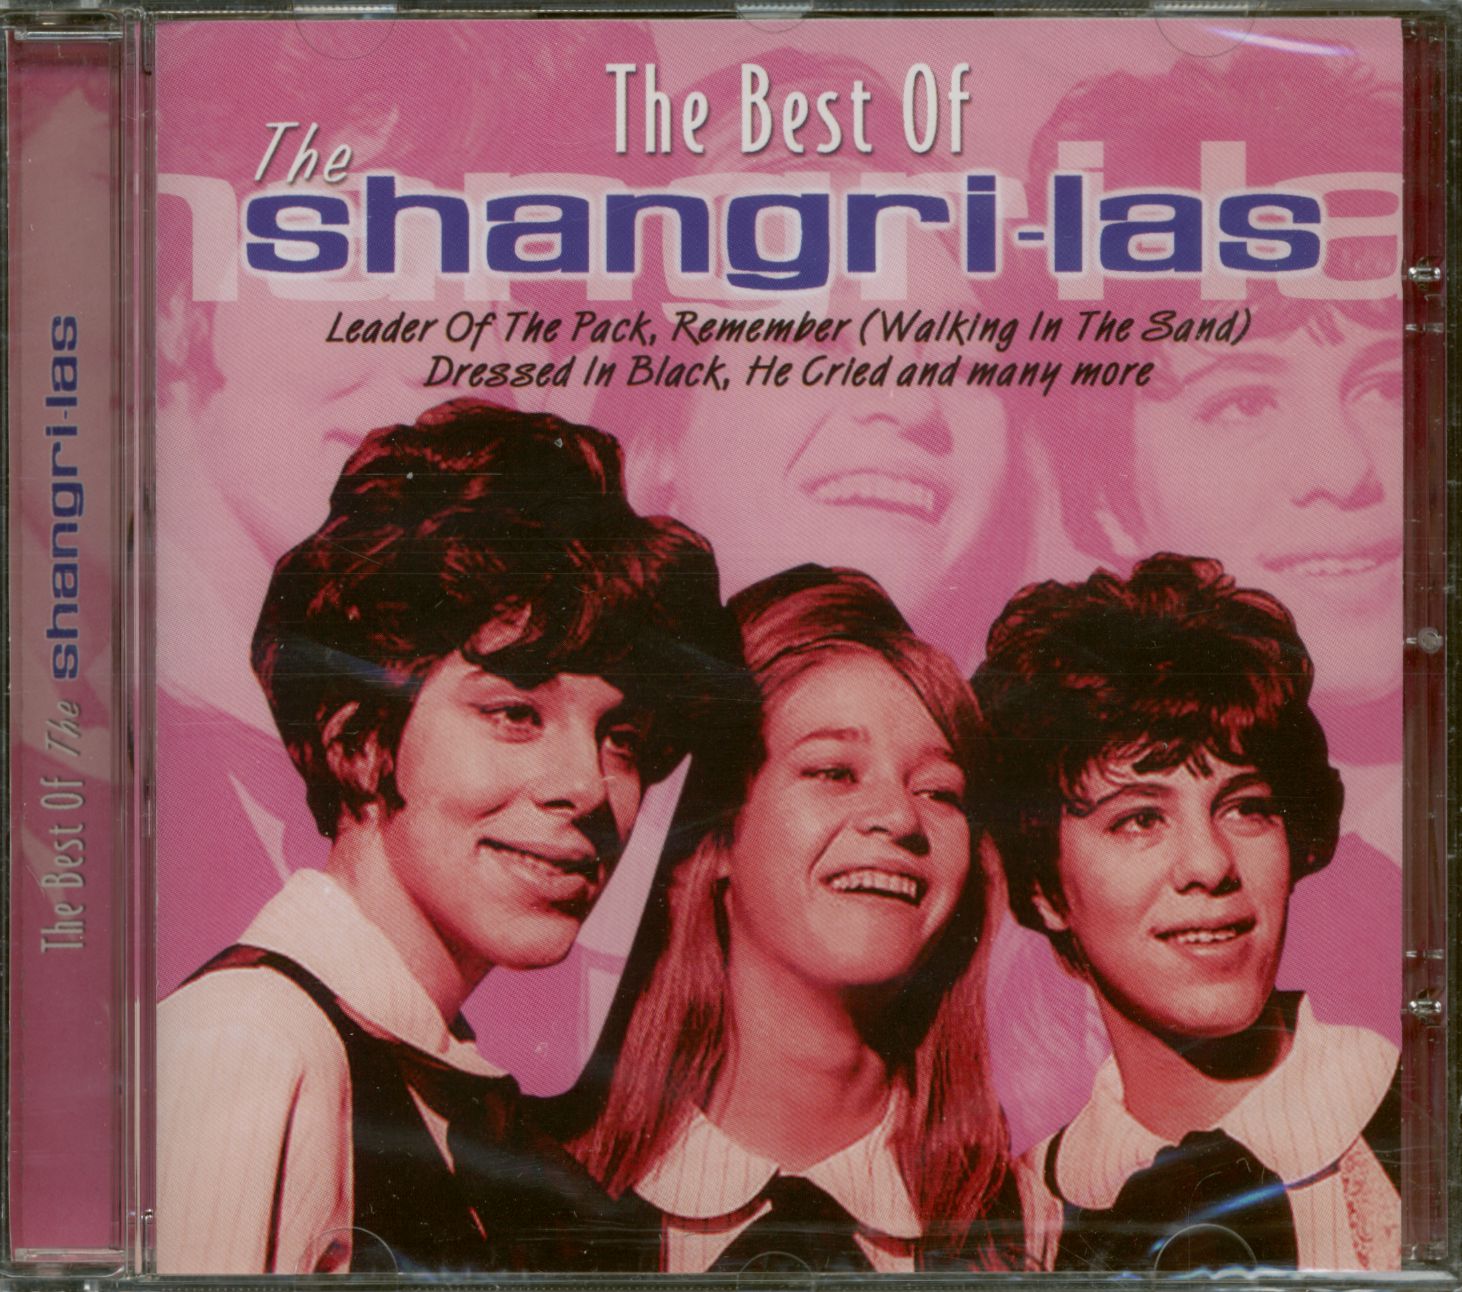 The Shangri-Las - The Best Of The Shangri-Las (CD) - Beat 60s 70s | eBay